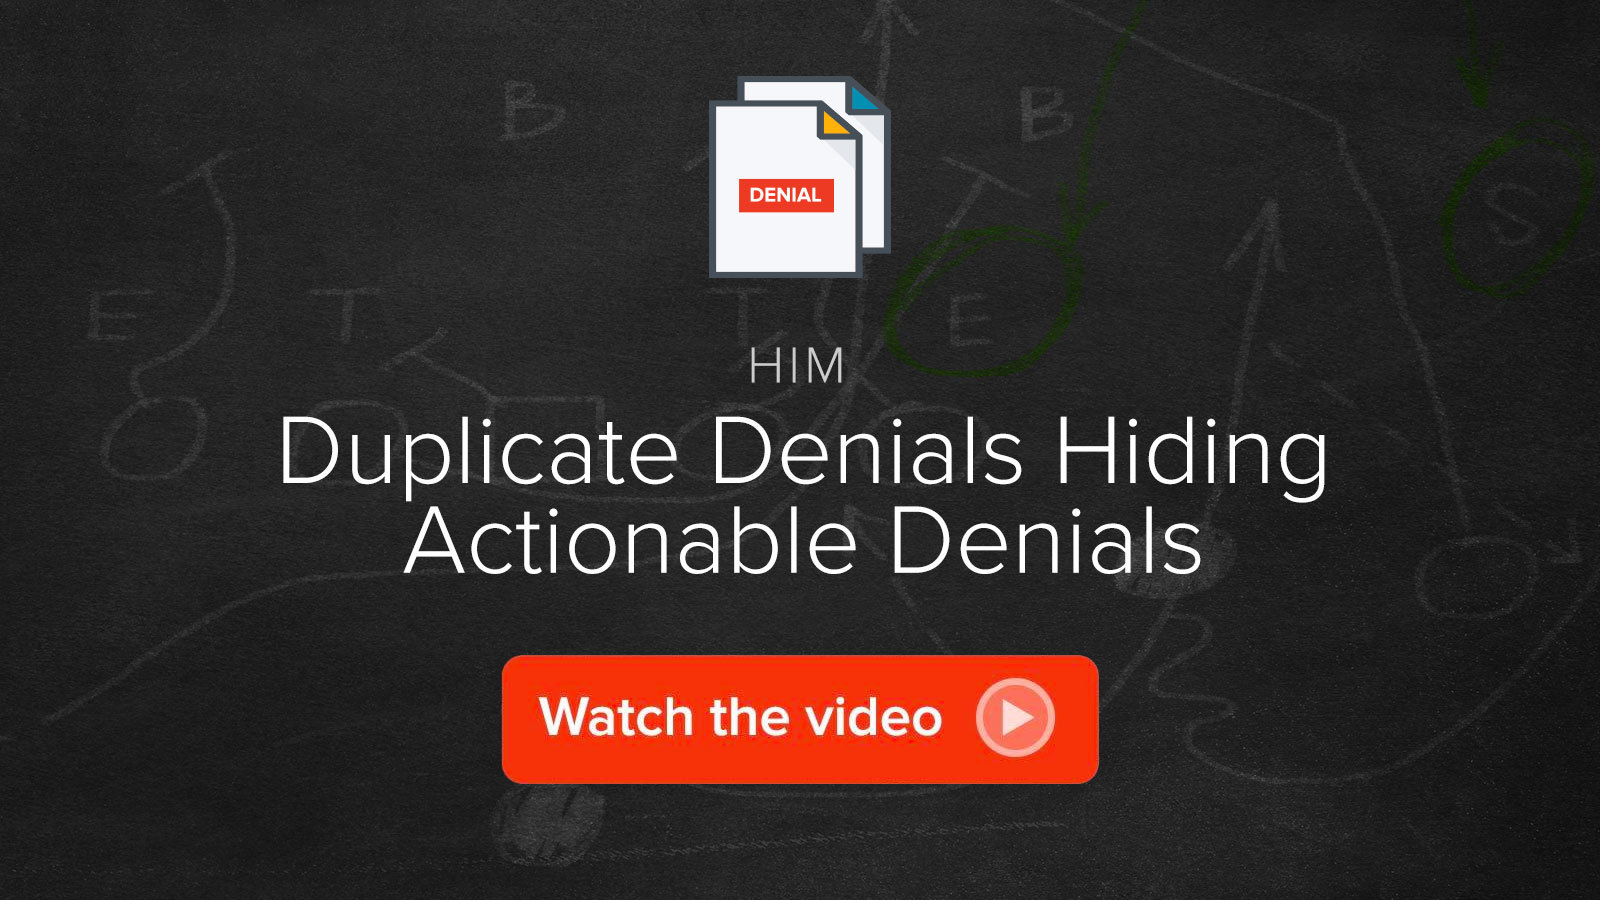 Watch the Duplicate Denials Hiding Actionable Denials video